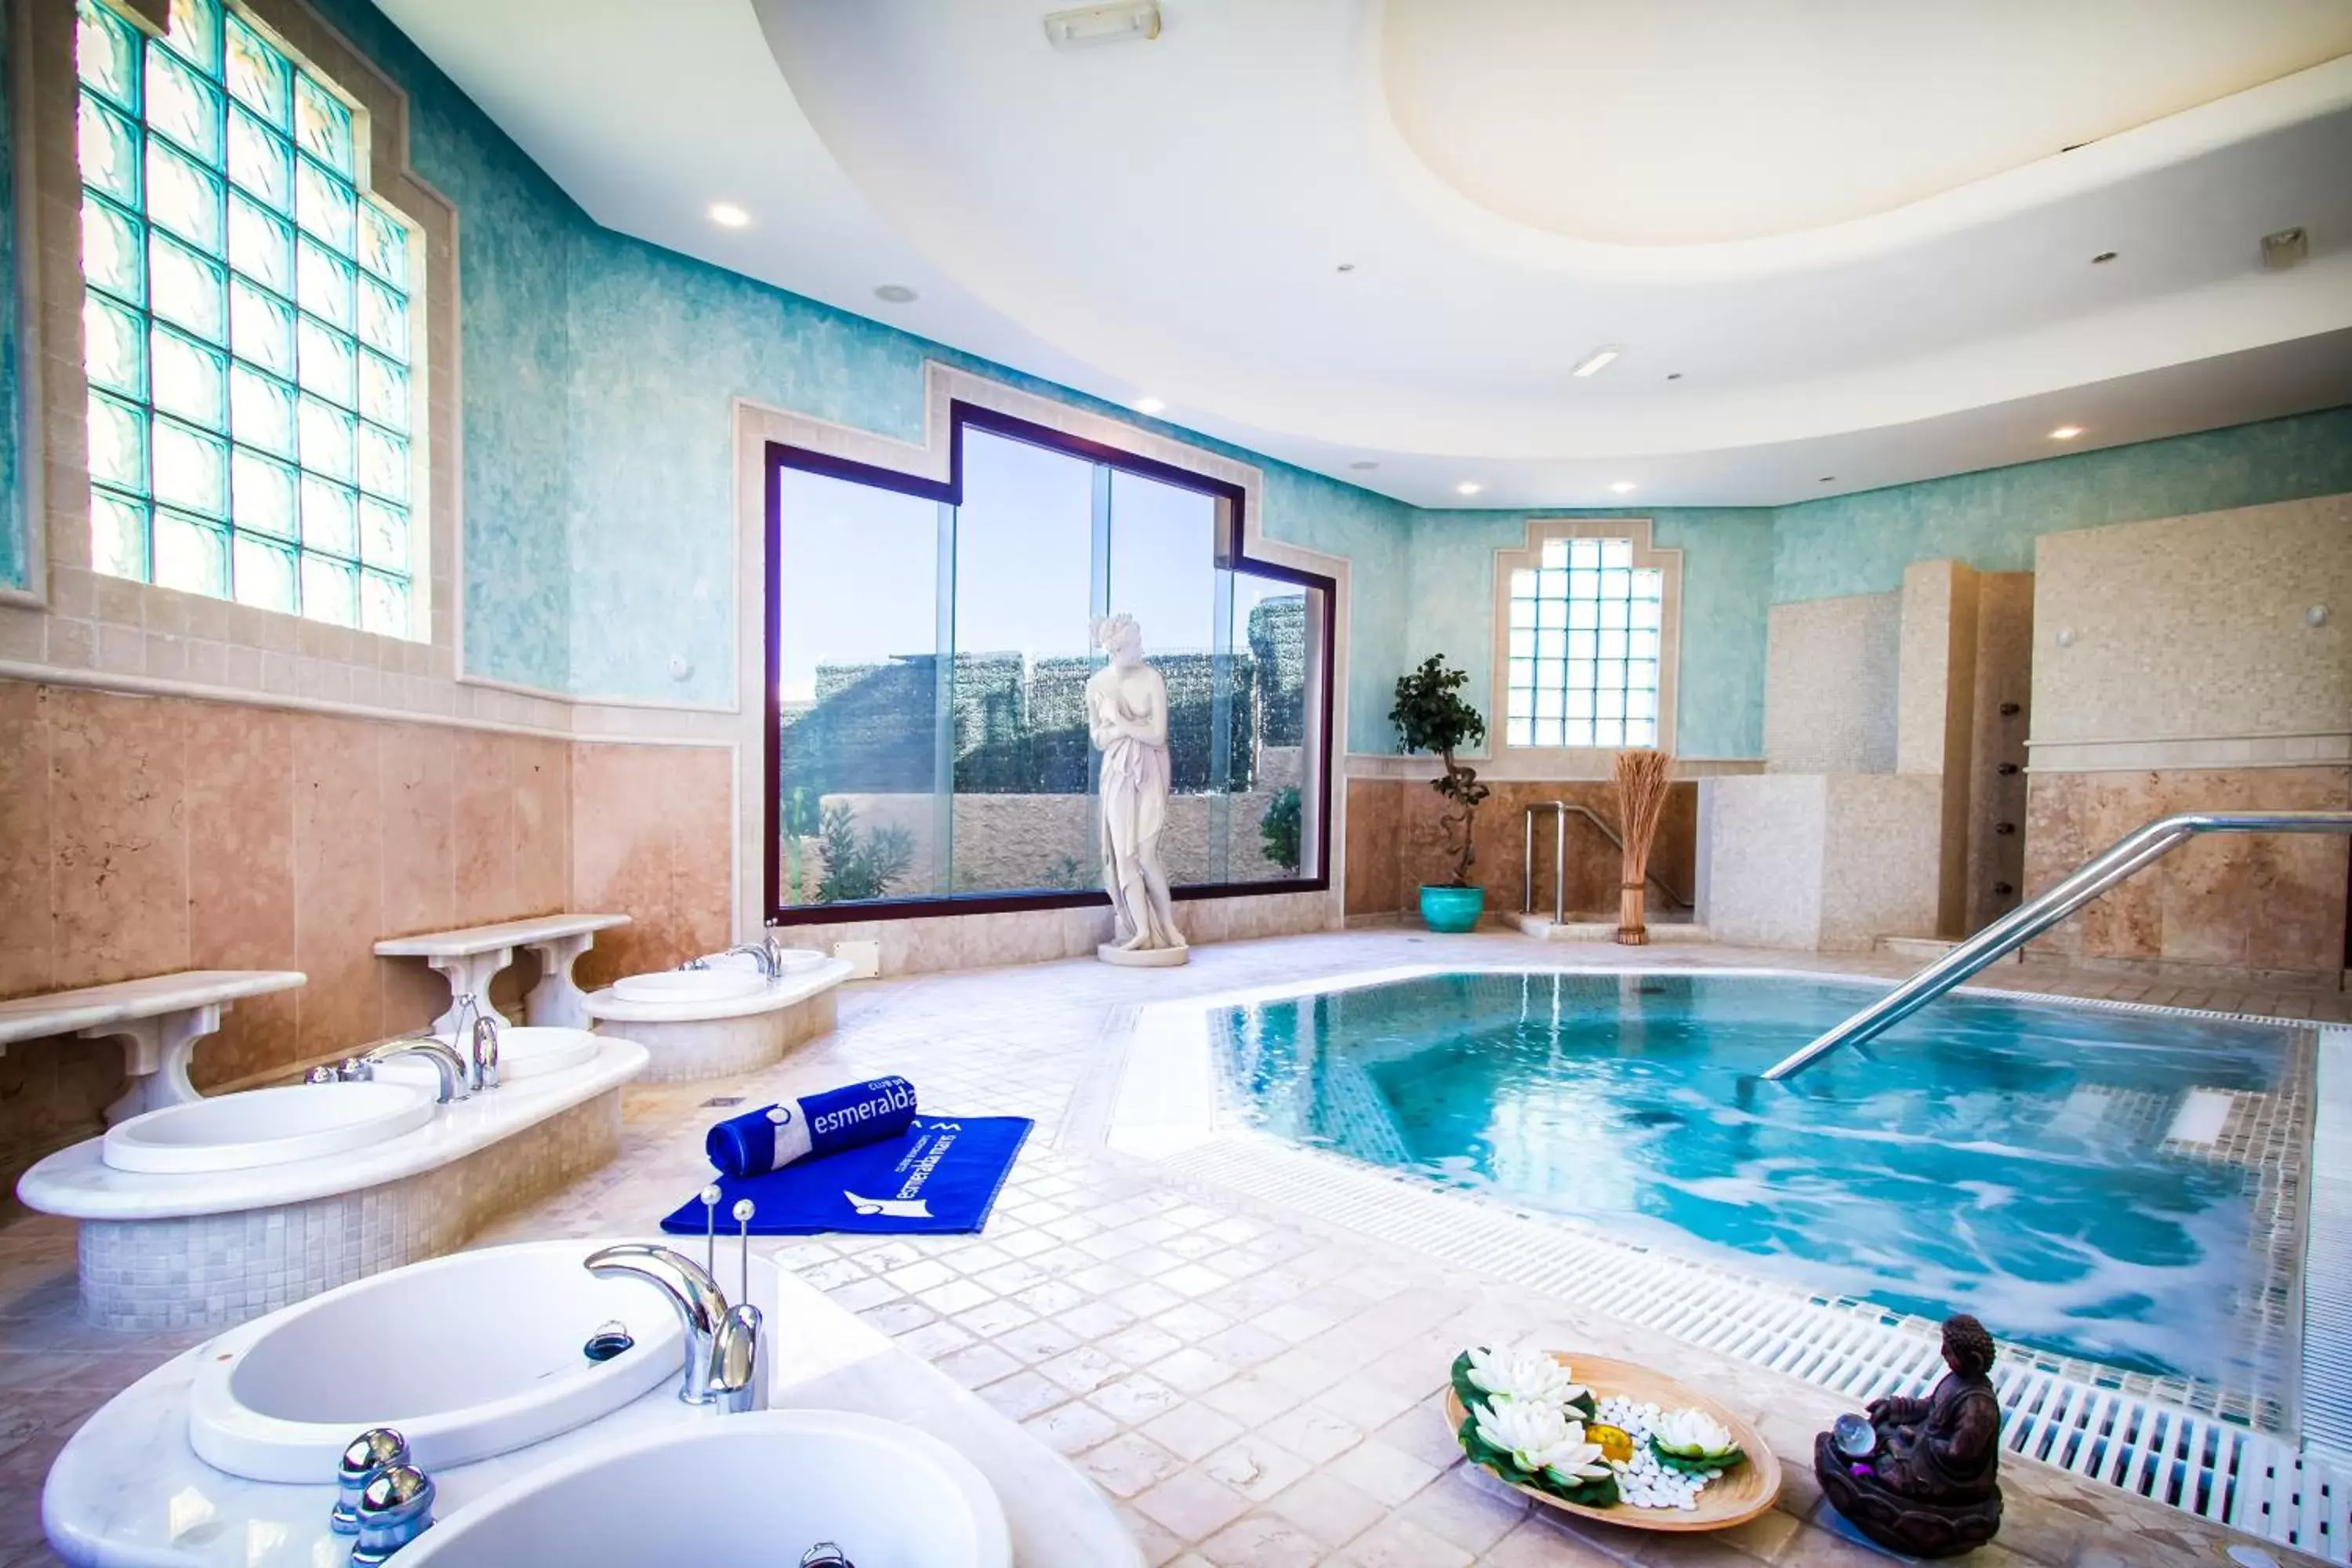 Spa and wellness centre/facilities, Bathroom in Hotel Esmeralda Maris by LIVVO